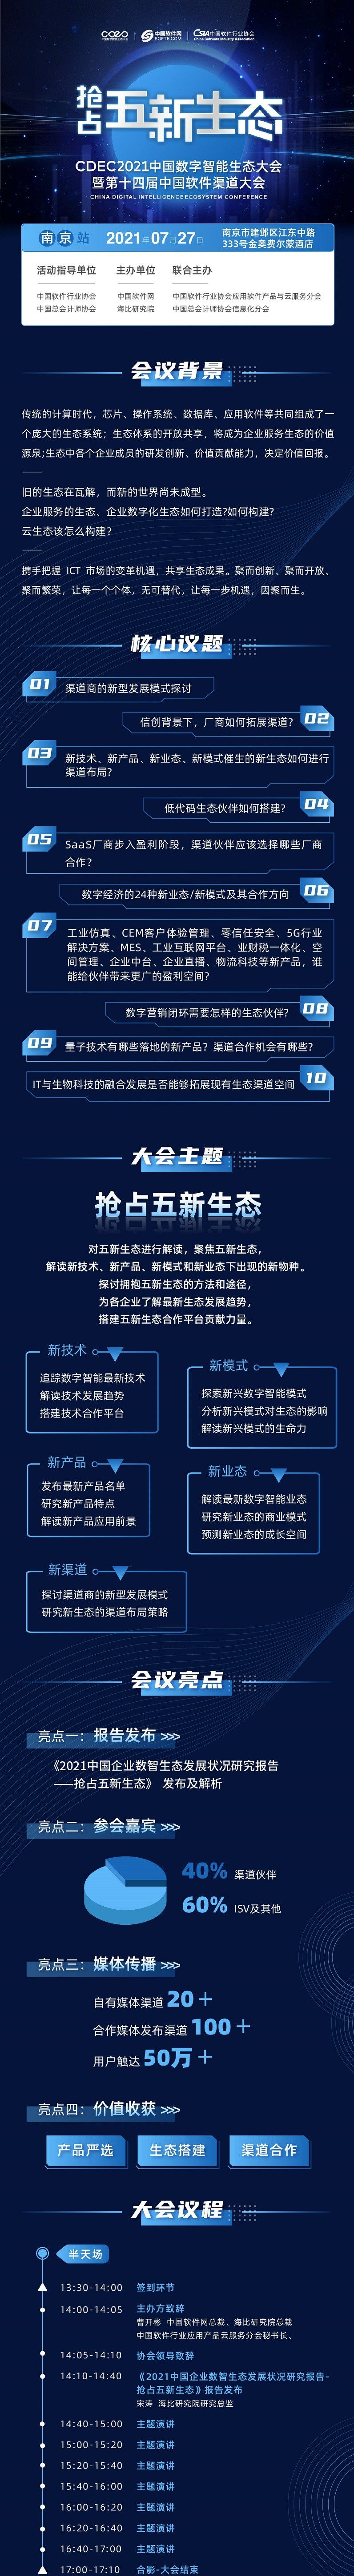 CDEC2021中国数字智能生态大会暨第十四届中国软件渠道大会-南京站